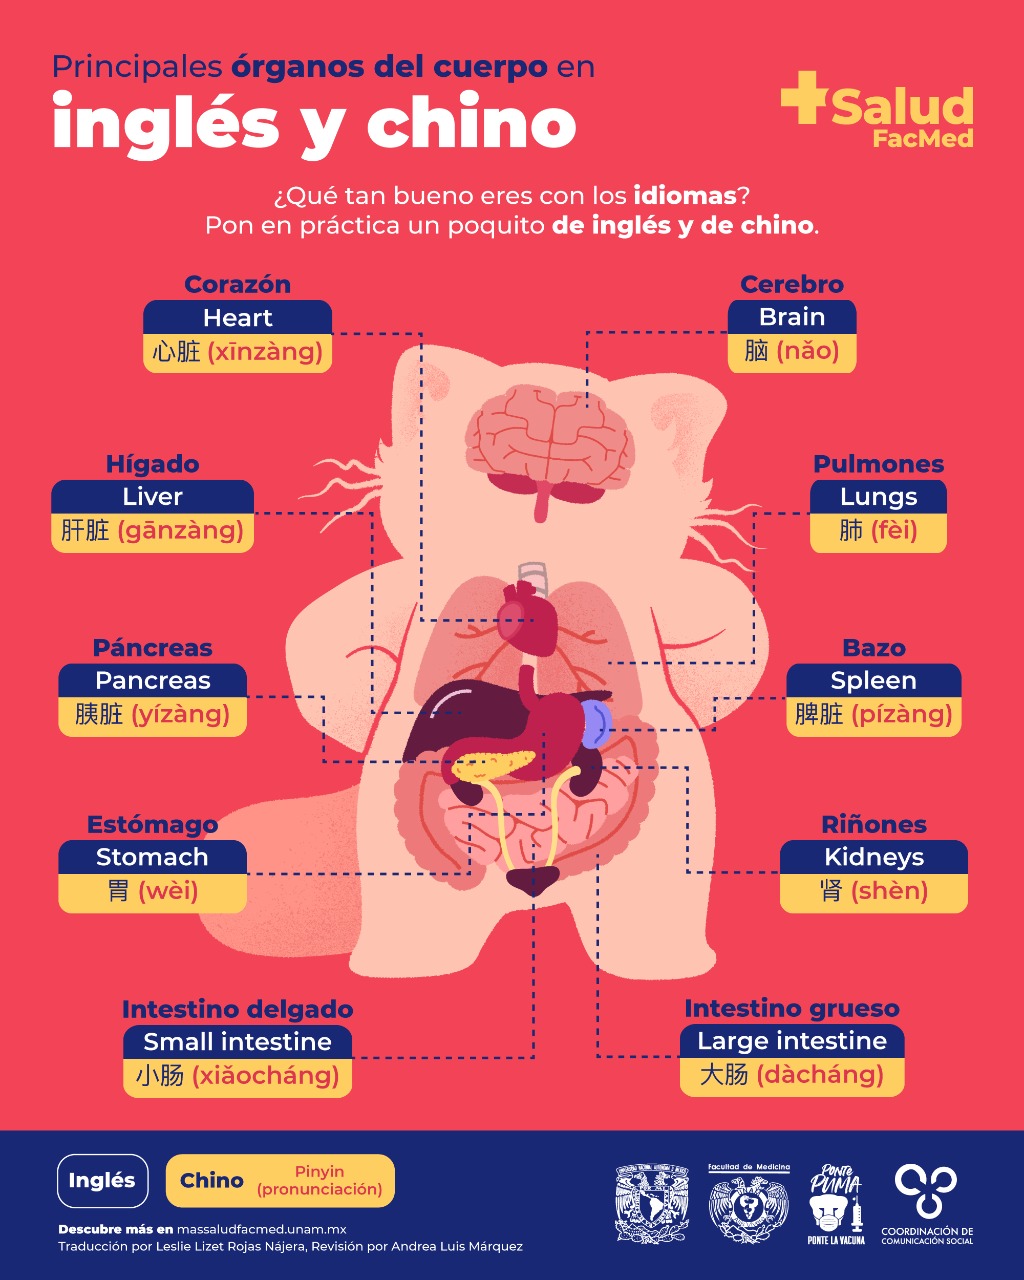 mini Casco Danubio Principales órganos del cuerpo: inglés /chino - +Salud FacMed